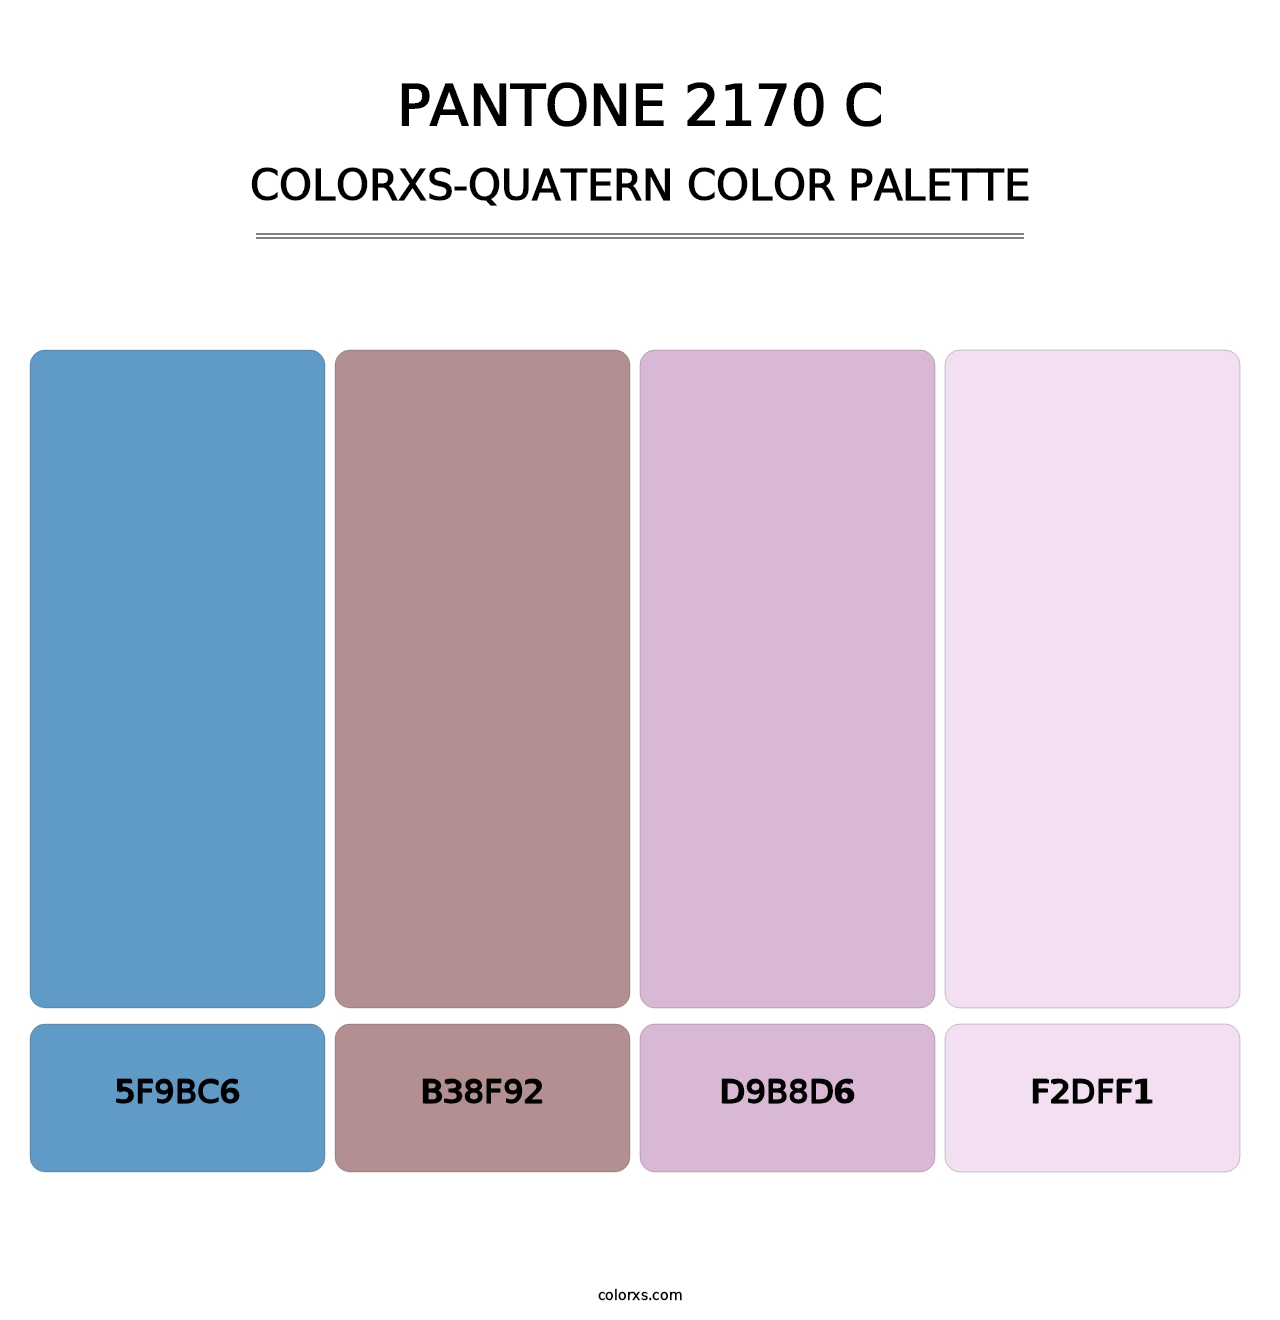 PANTONE 2170 C - Colorxs Quatern Palette